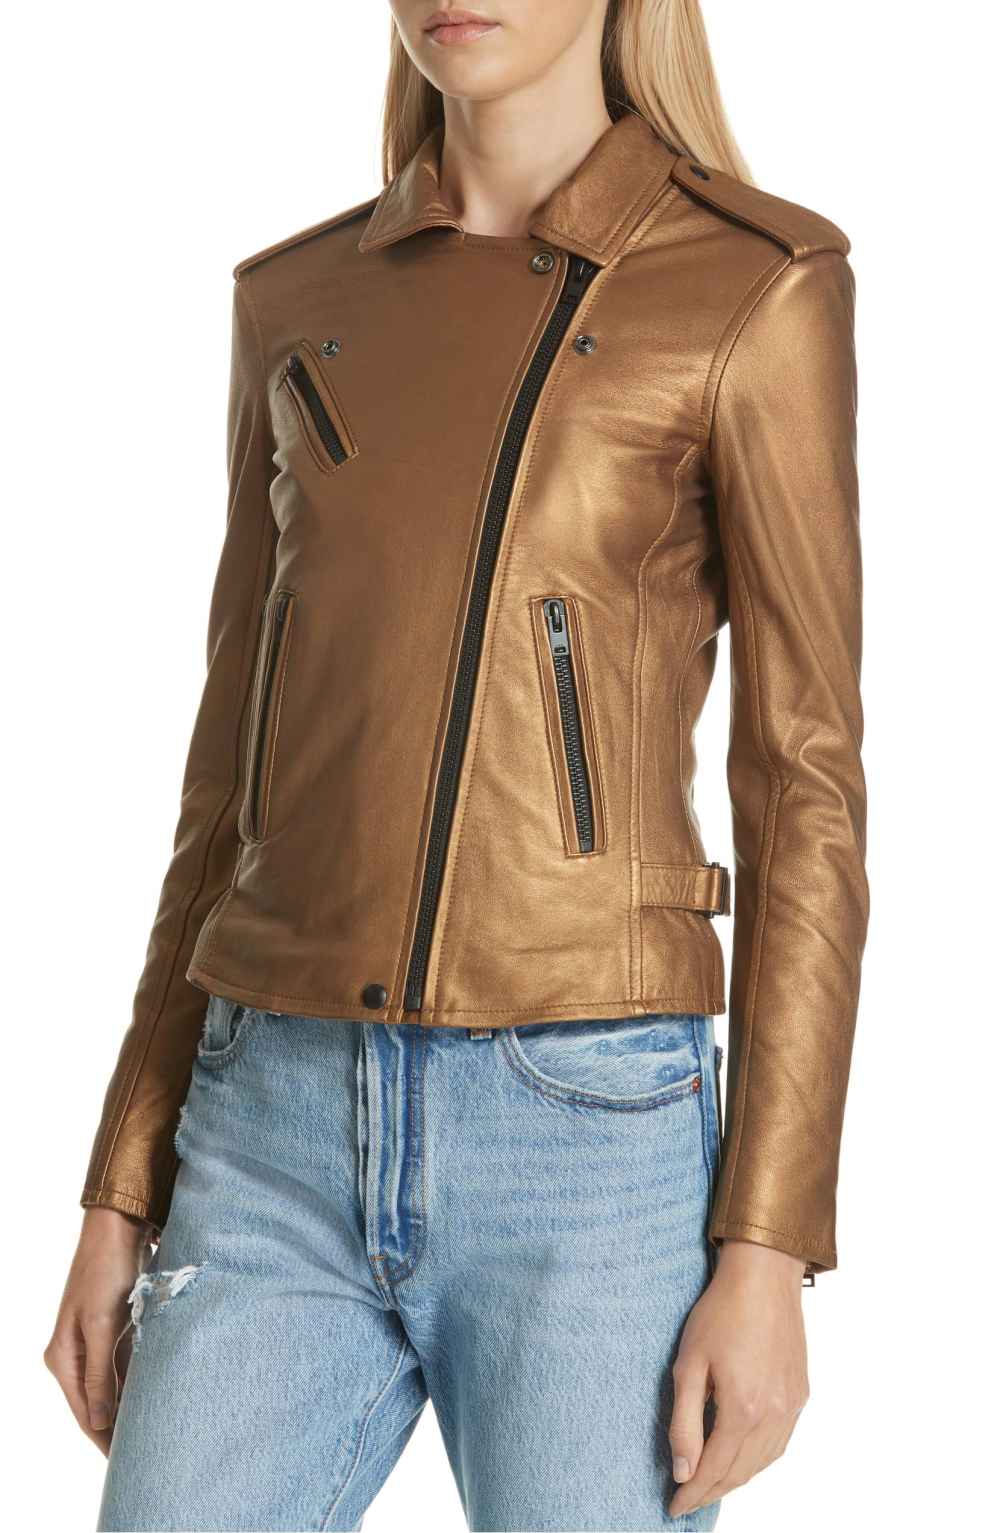 IRO New Han Metallic Leather Jacket